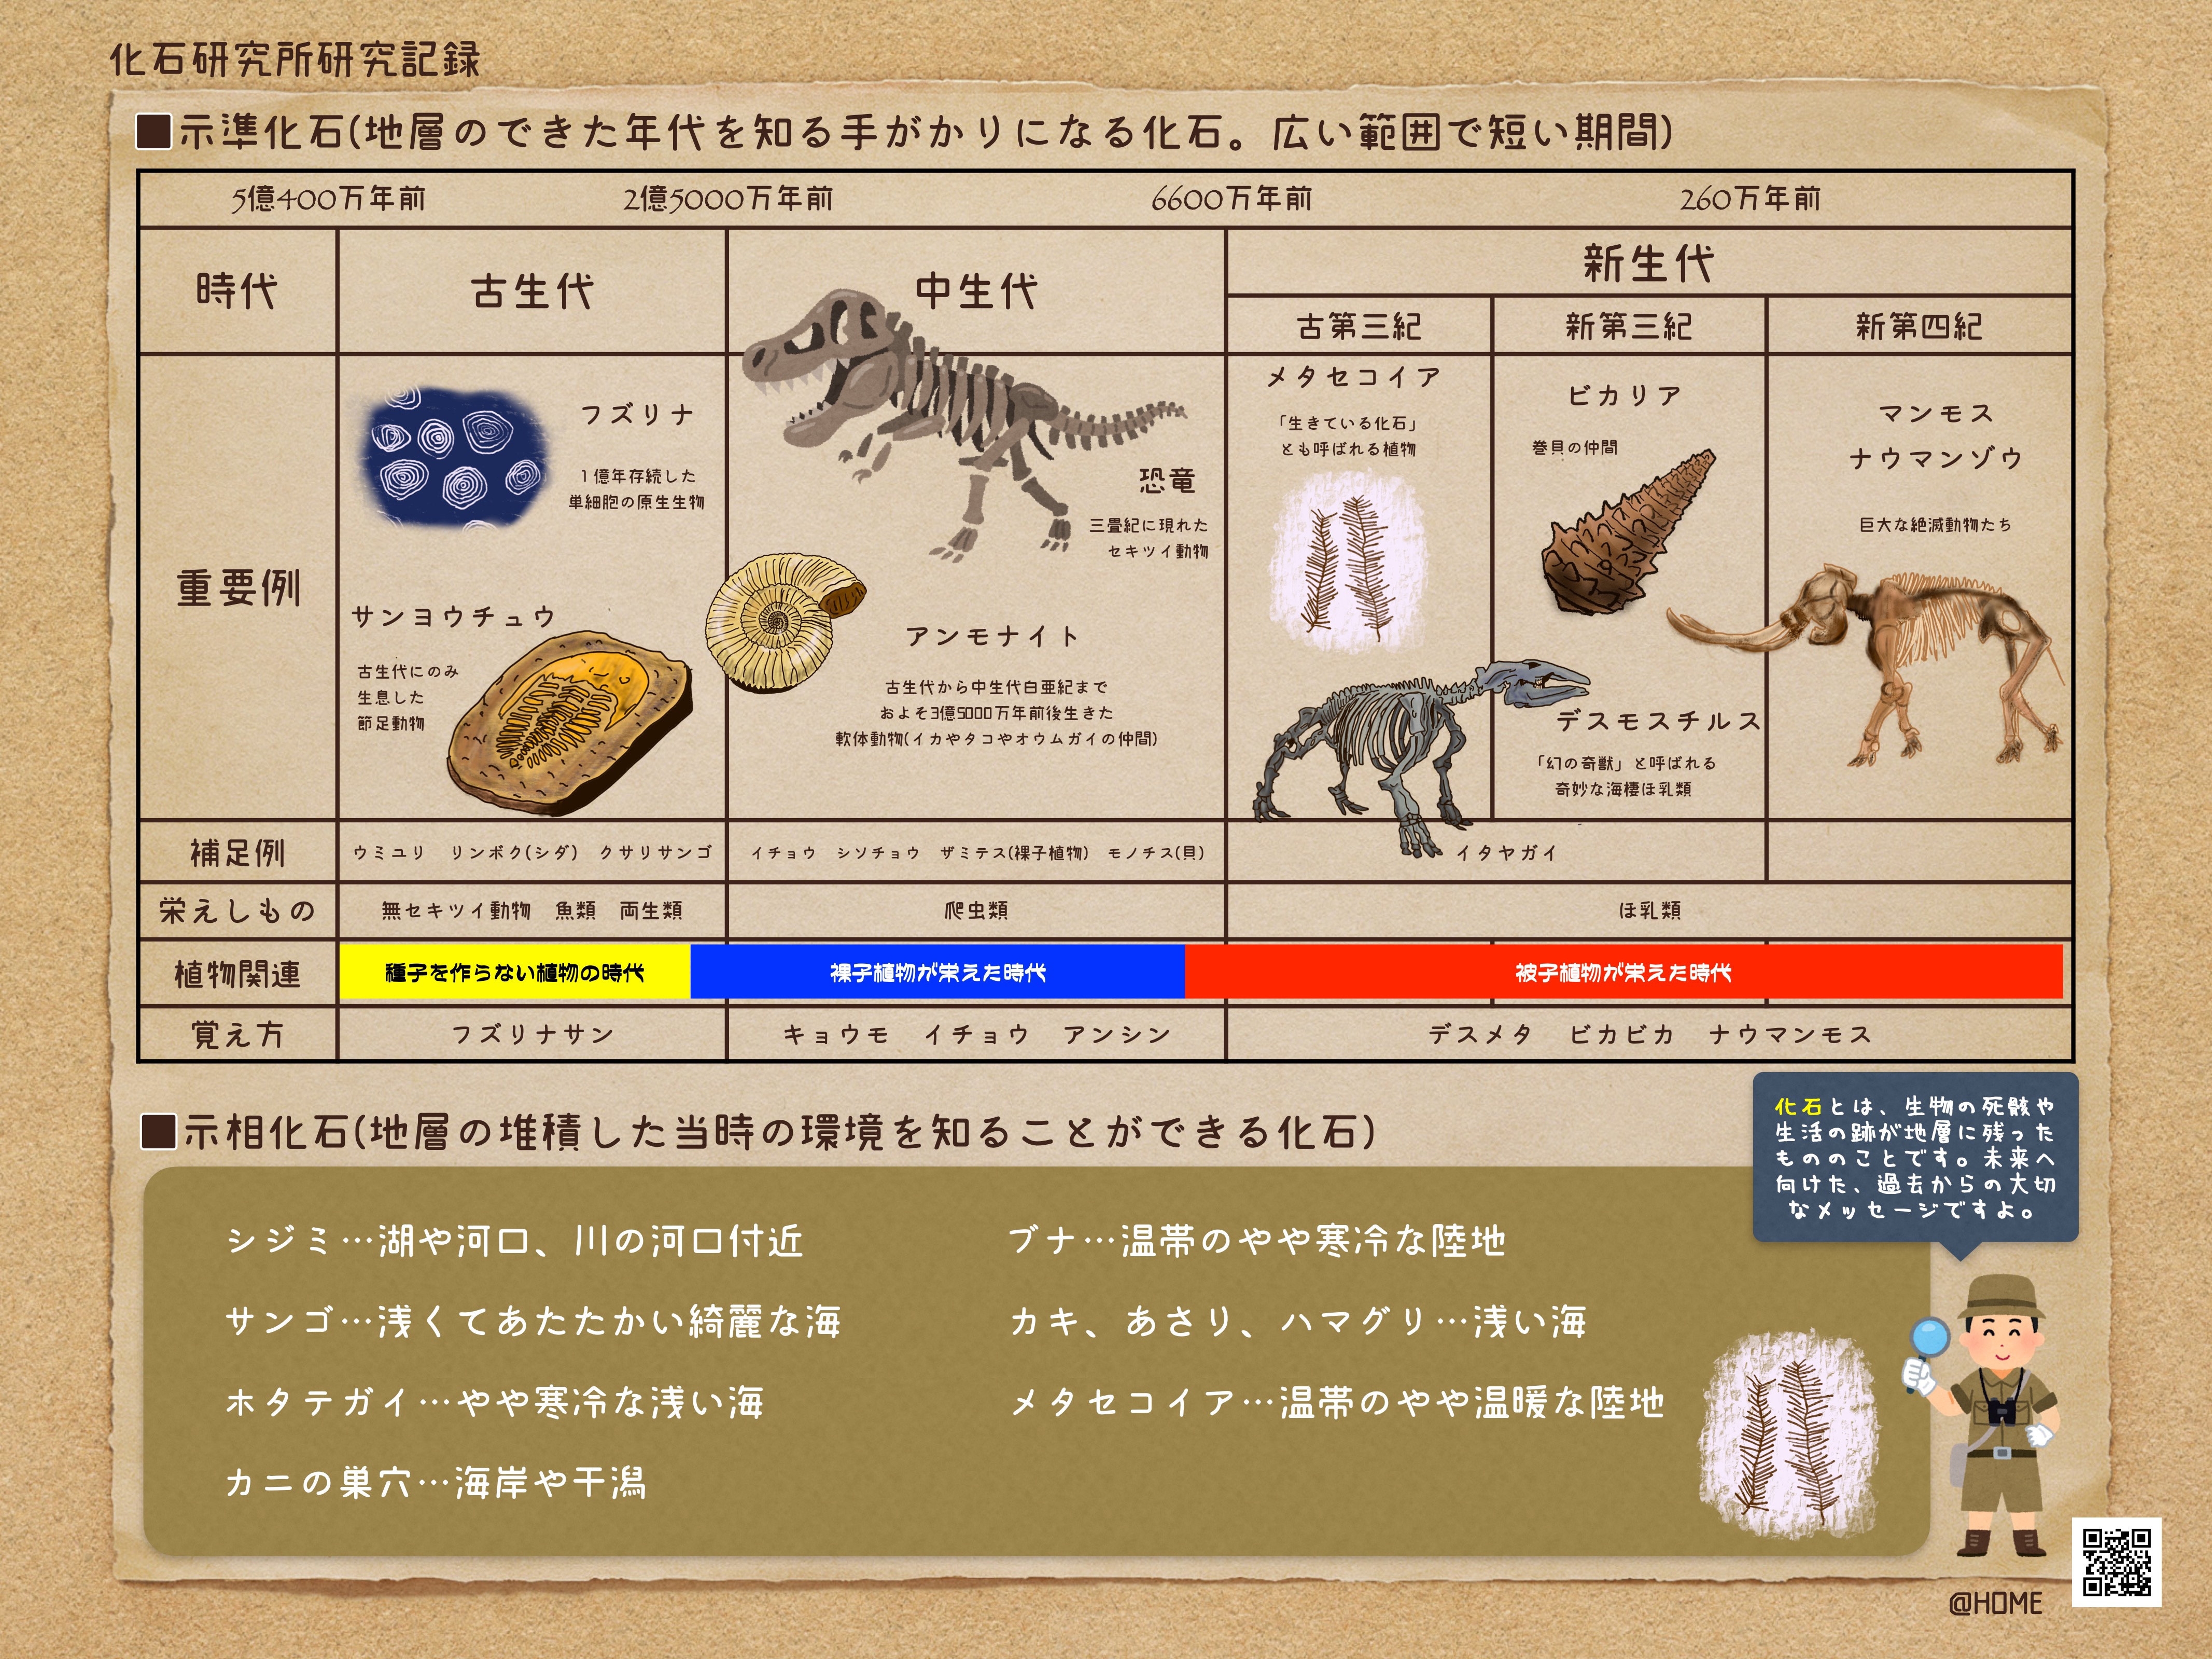 中学理科の示準化石や示相化石がわかる図表プリントから壮大な歴史に思いを馳せたお話 第二の家 ブログ 藤沢市の個別指導塾のお話